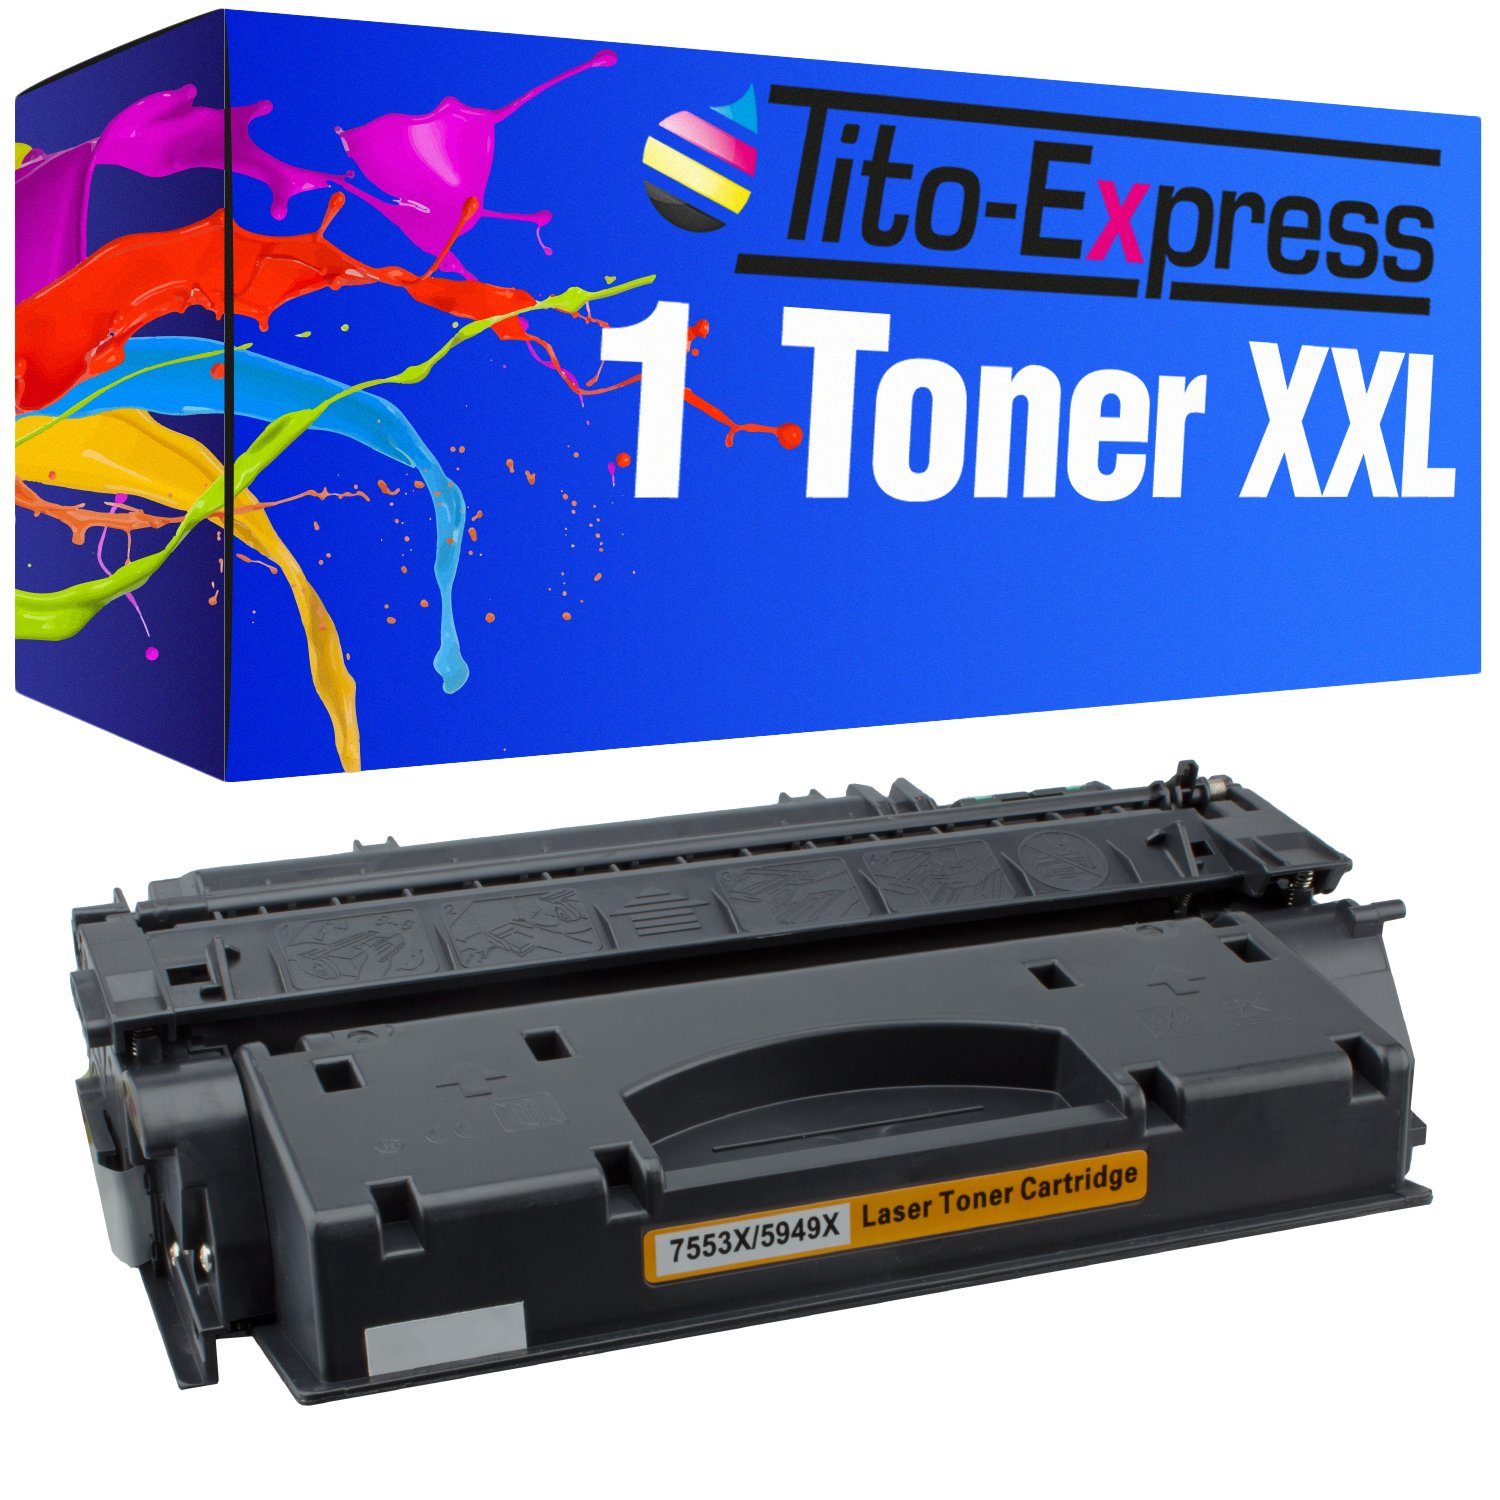 Tito-Express Tonerpatrone ersetzt HP Q 5949 X HP Q 5949X HPQ5949X HP 53X Black, für LaserJet 1320 1320N 1320NW 1320 Series 1320TN 3390 3392